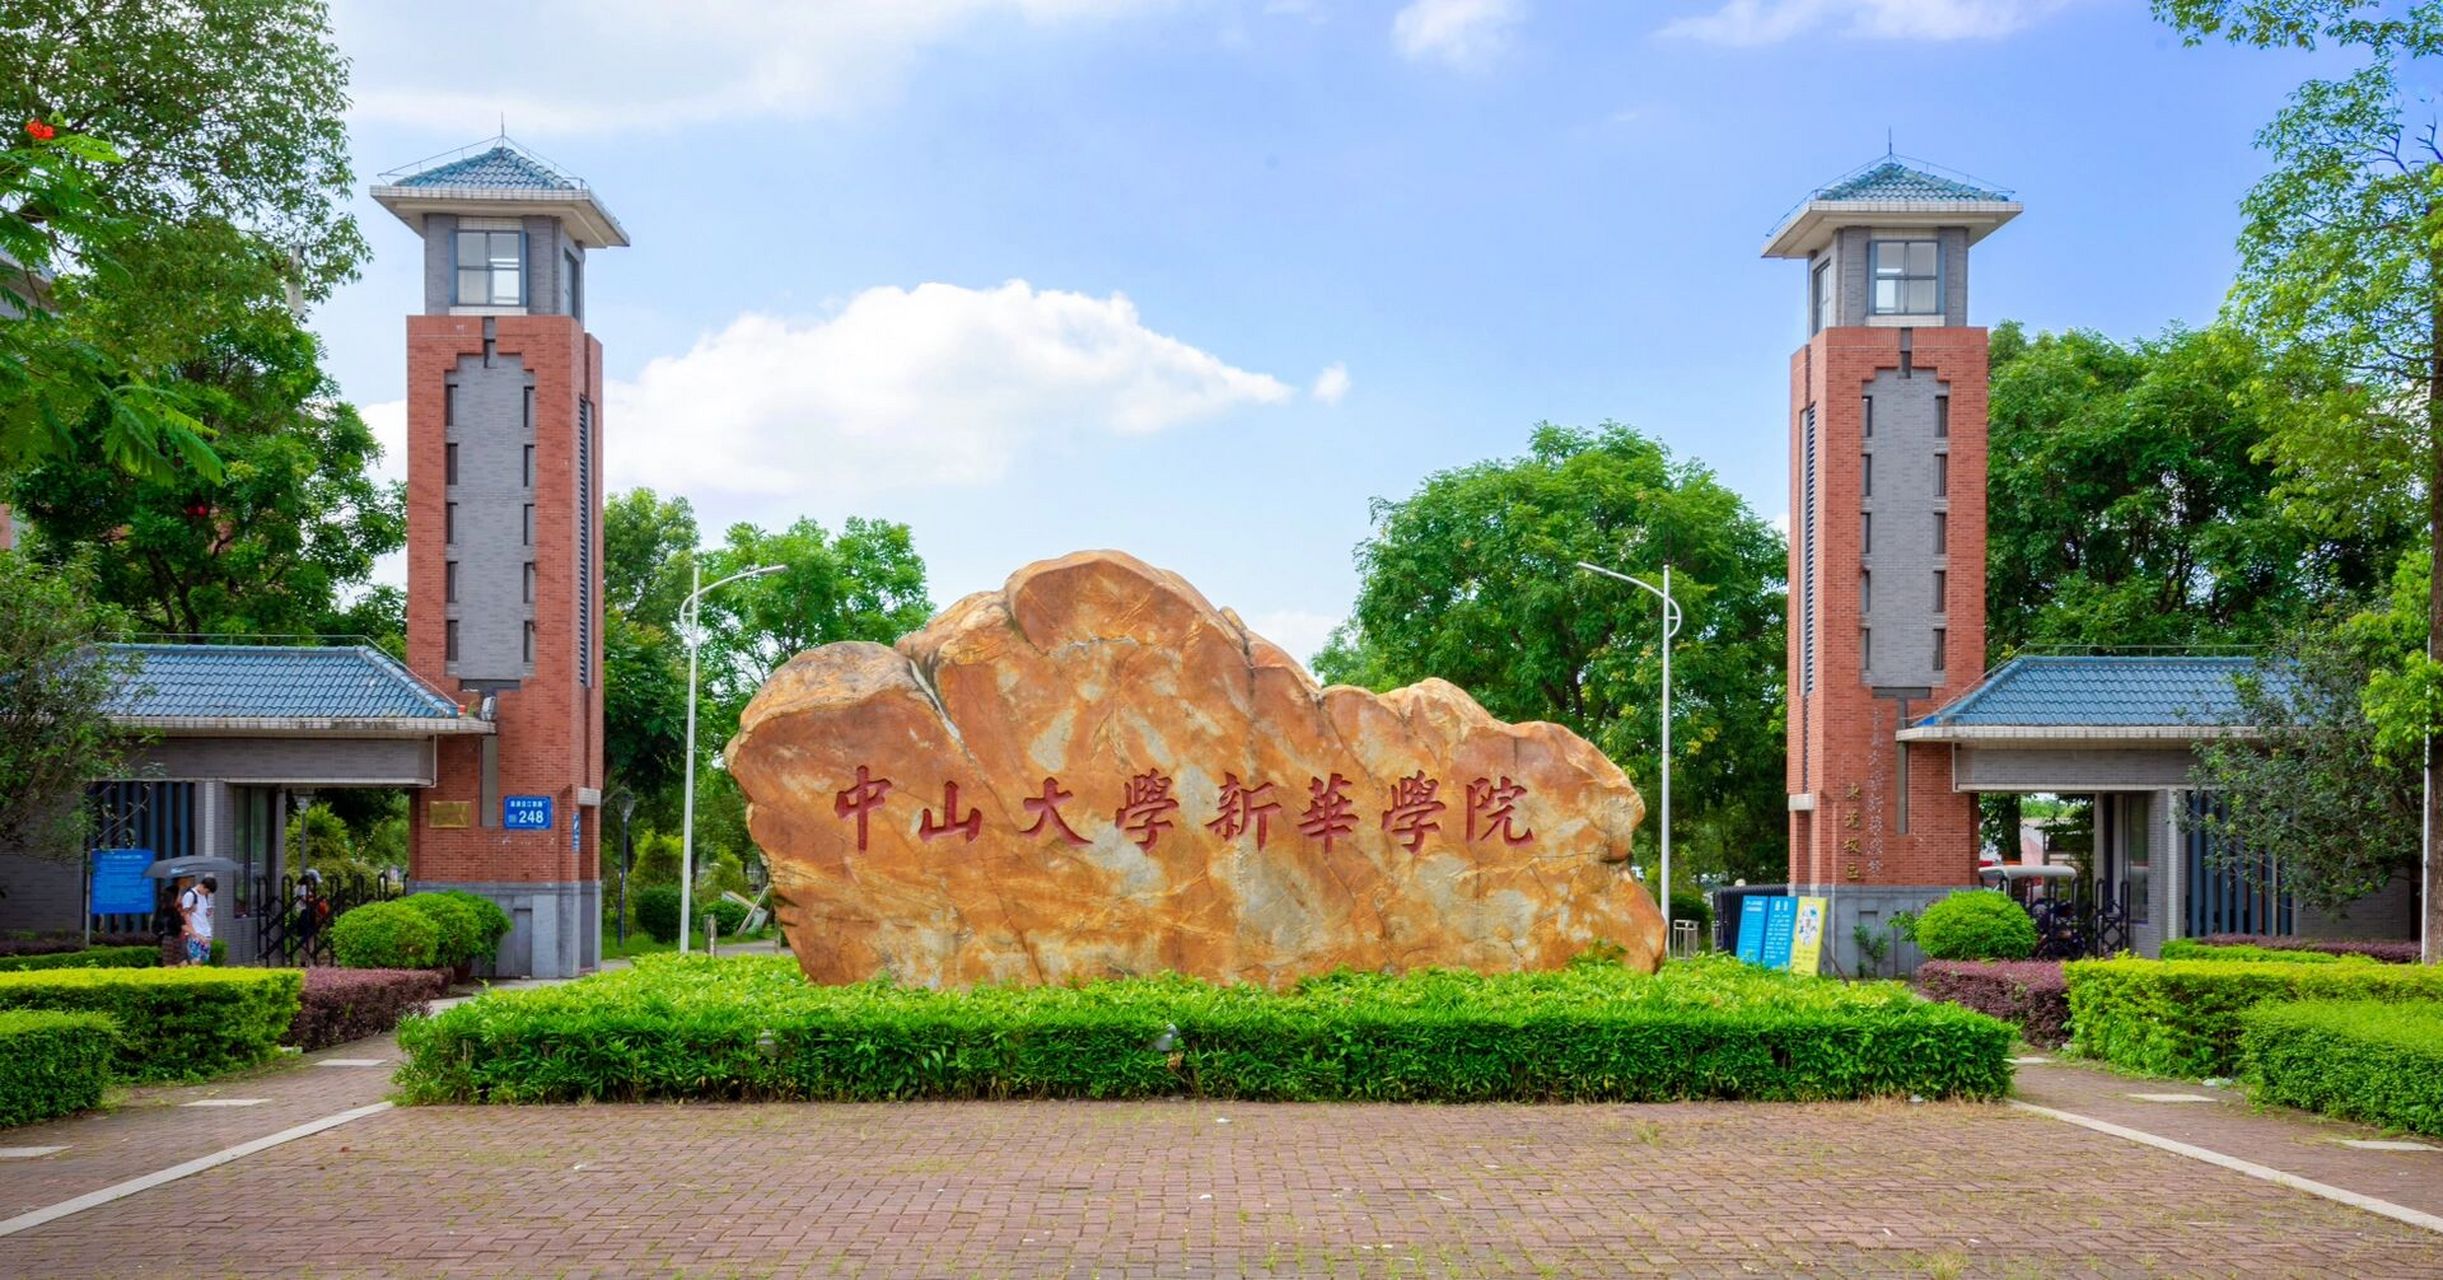 广州新华学院logo图片